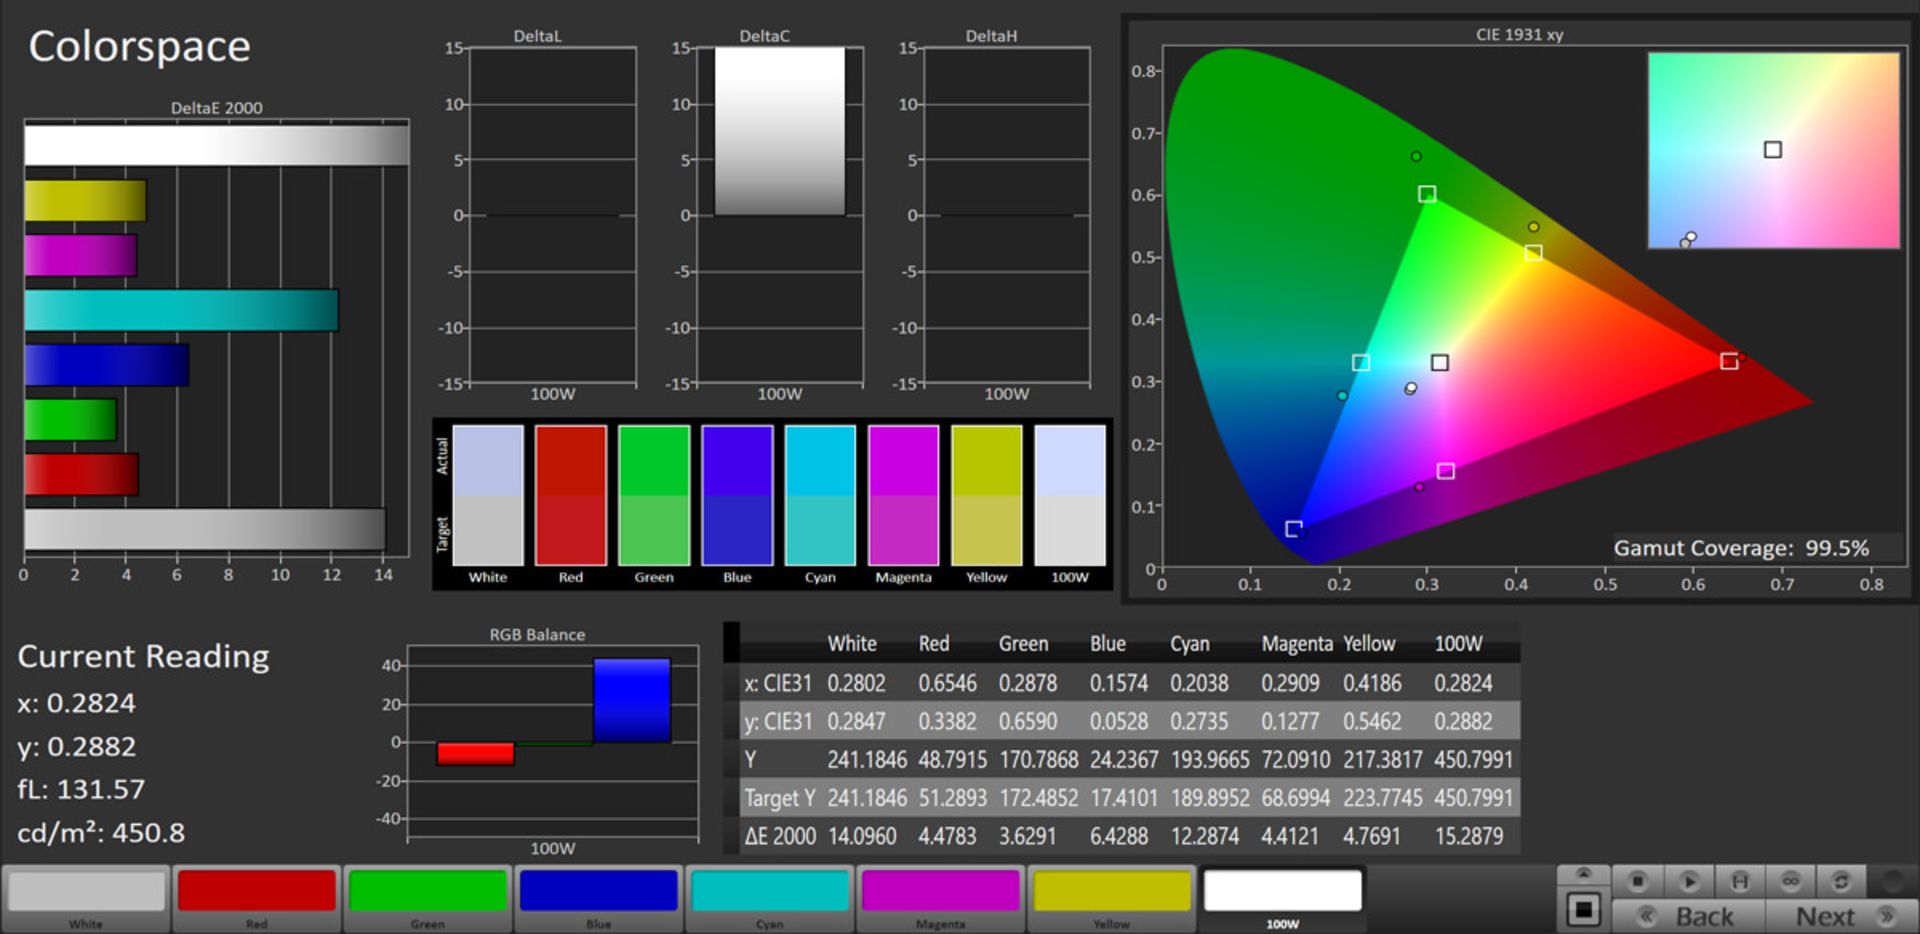 مرجع متخصصين ايران پوشش رنگي در حالت Vivid و فضاي sRGB - آنر ۹ ايكس پرو